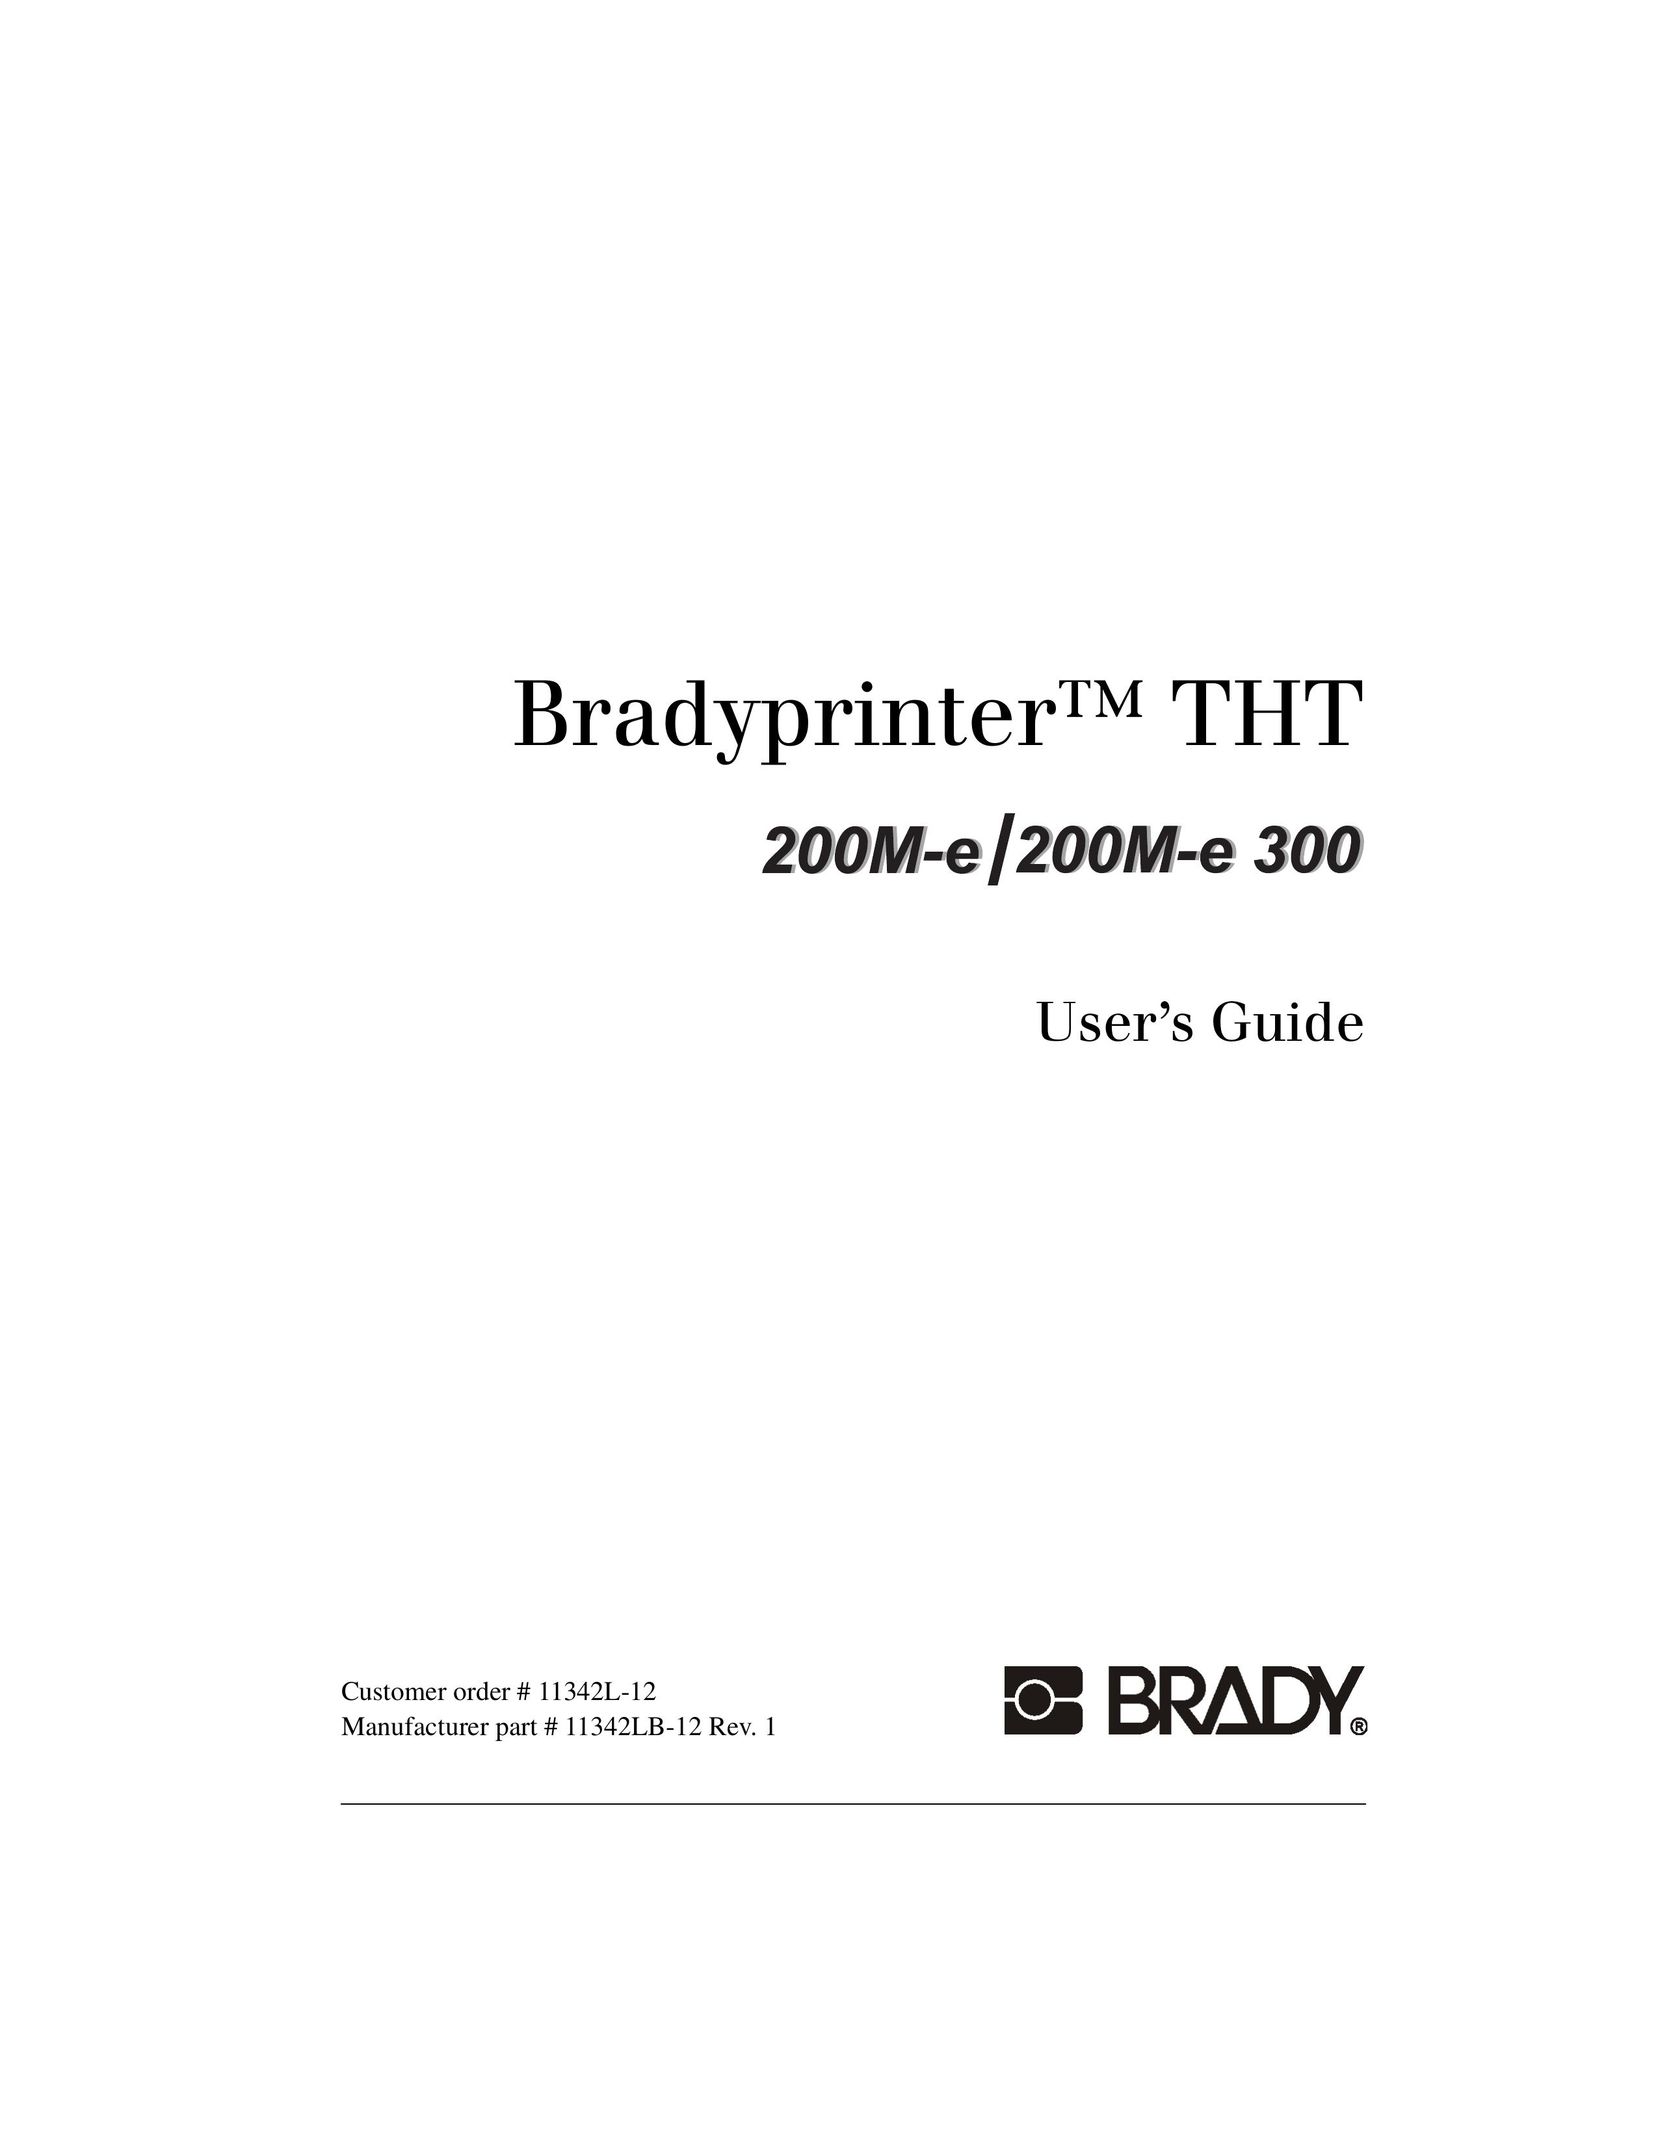 Brady 200M-e 300 Printer User Manual